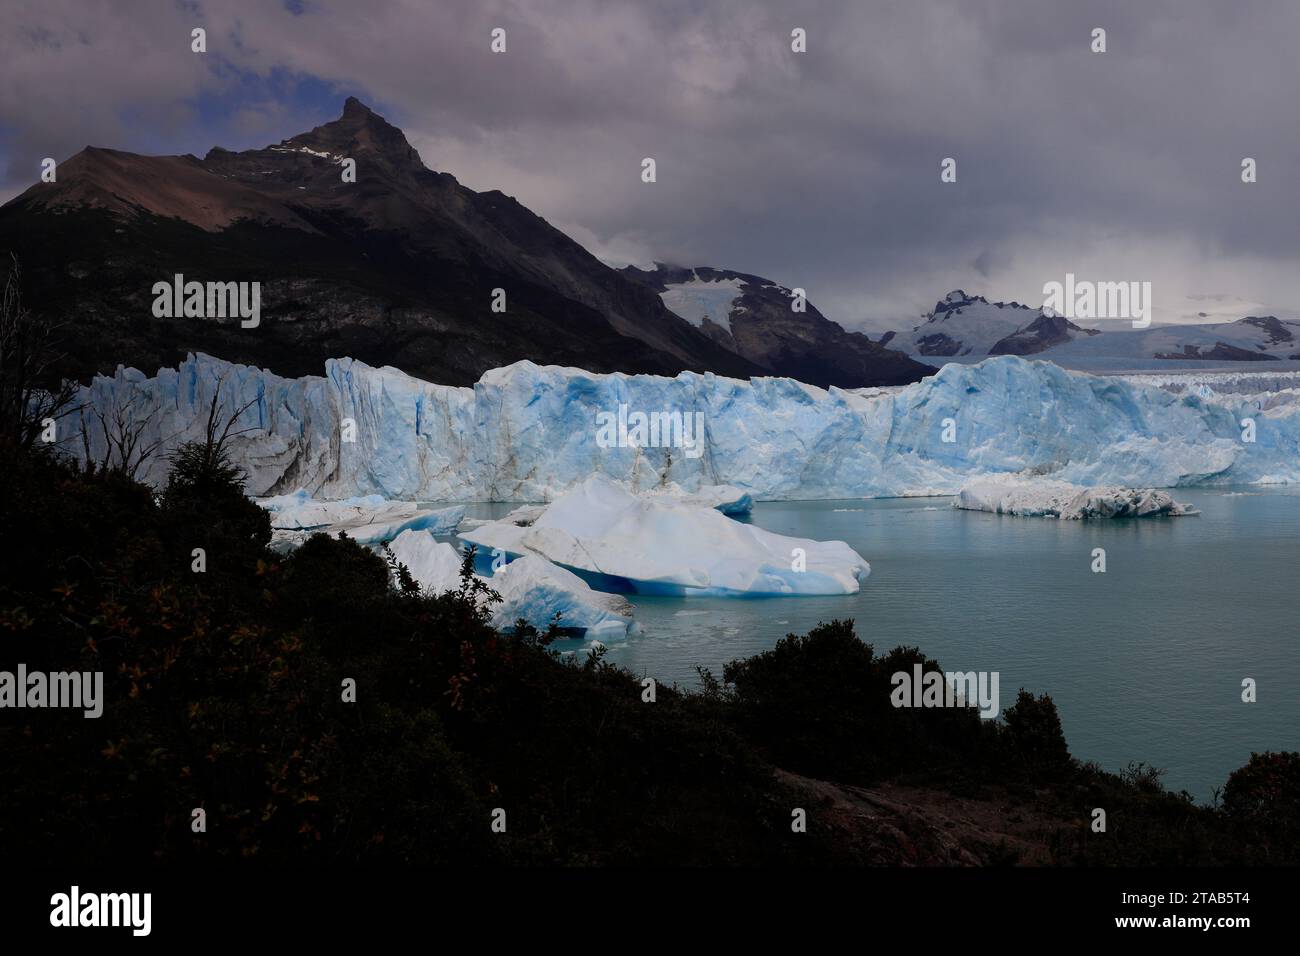 Perito Moreno Glacier with icebergs in Lago Argentino Lake in Los Glaciares National Park near El Calafate.Argentina Stock Photo